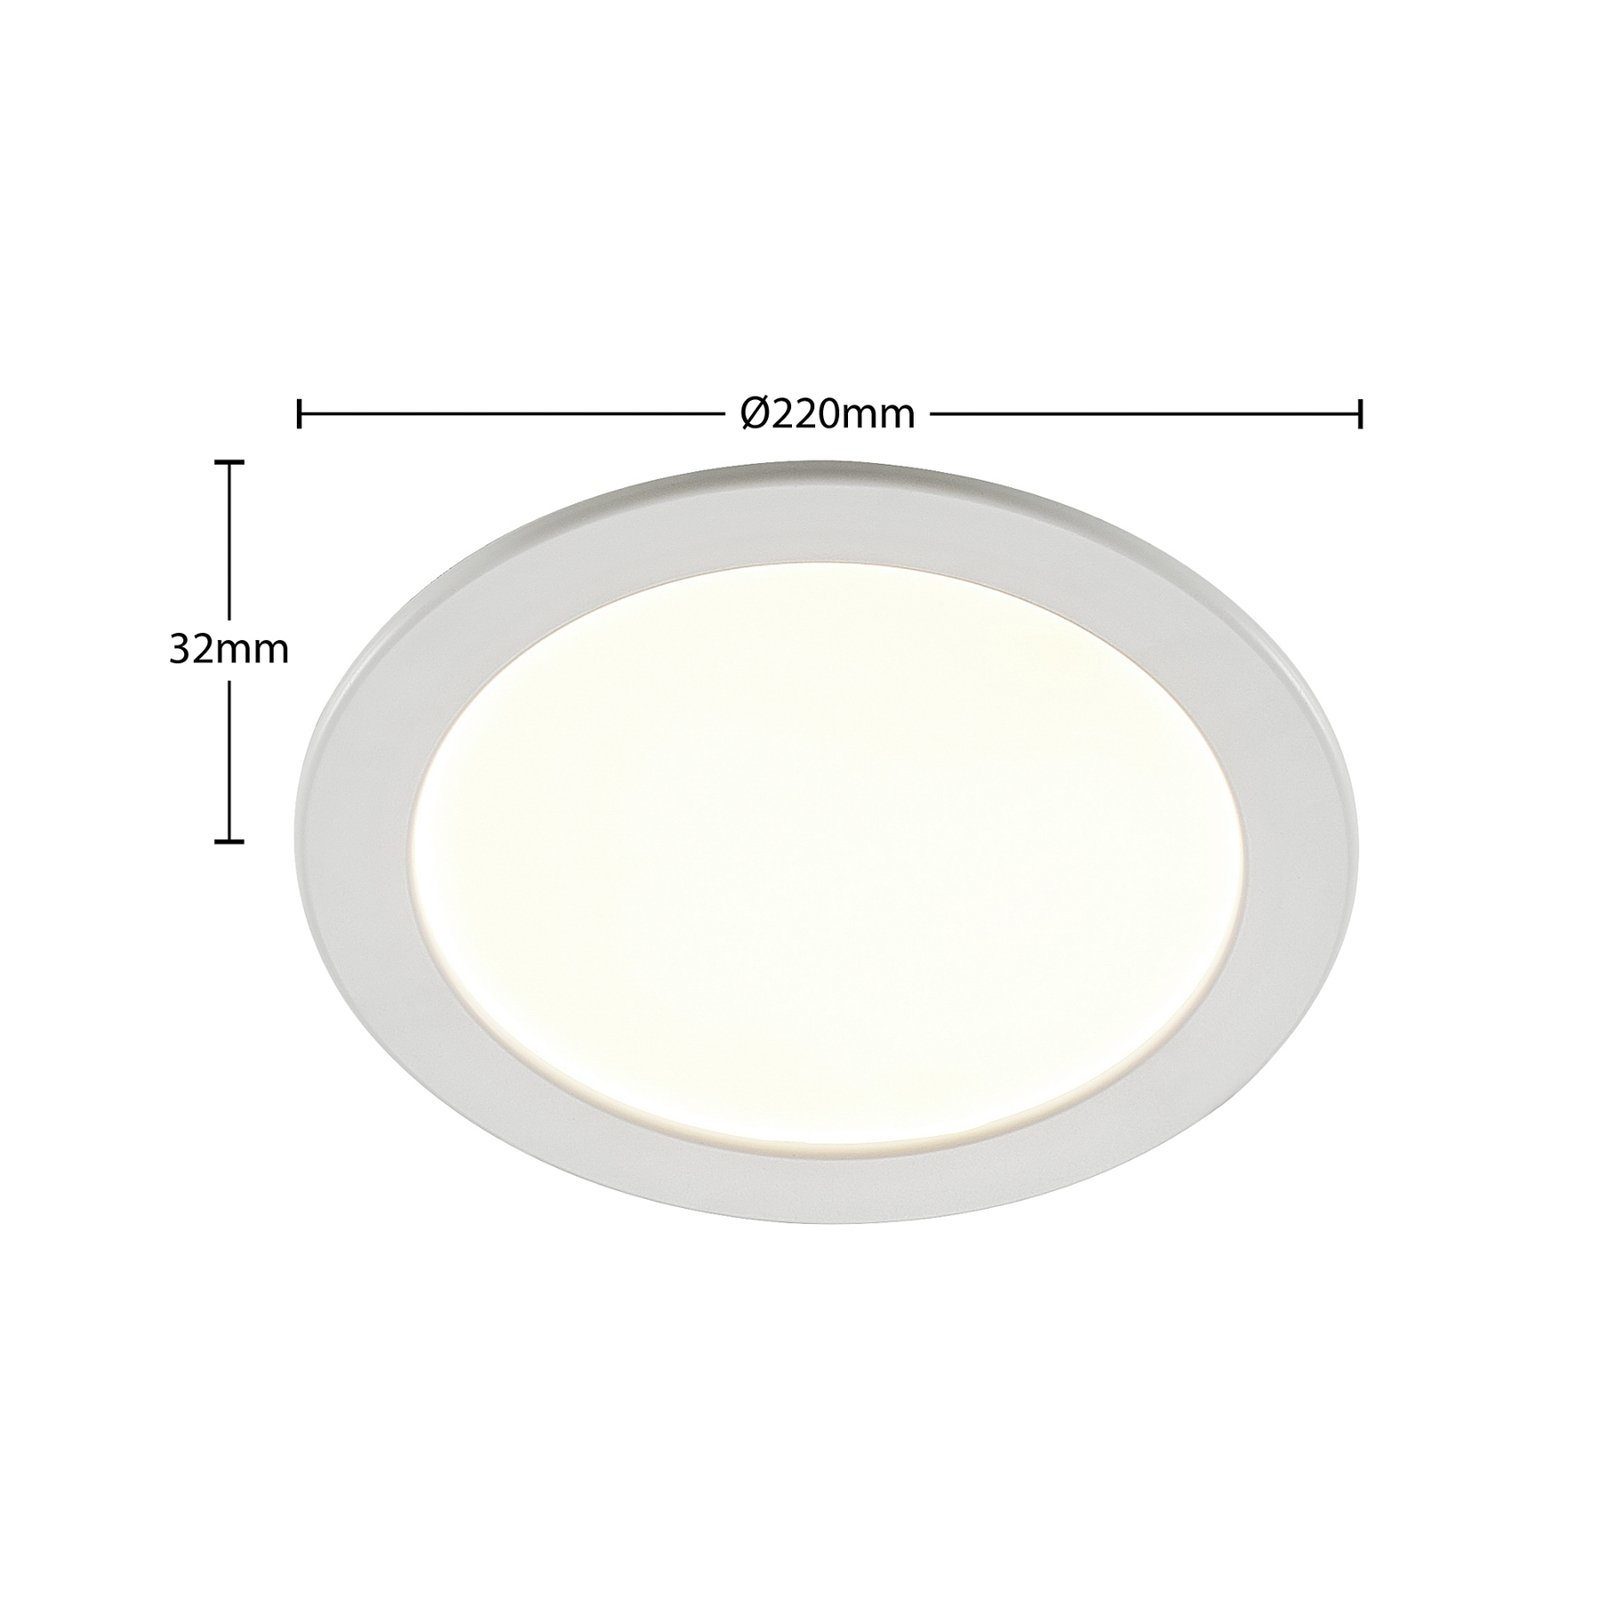 Prios Cadance spot LED da incasso, bianco, 22 cm